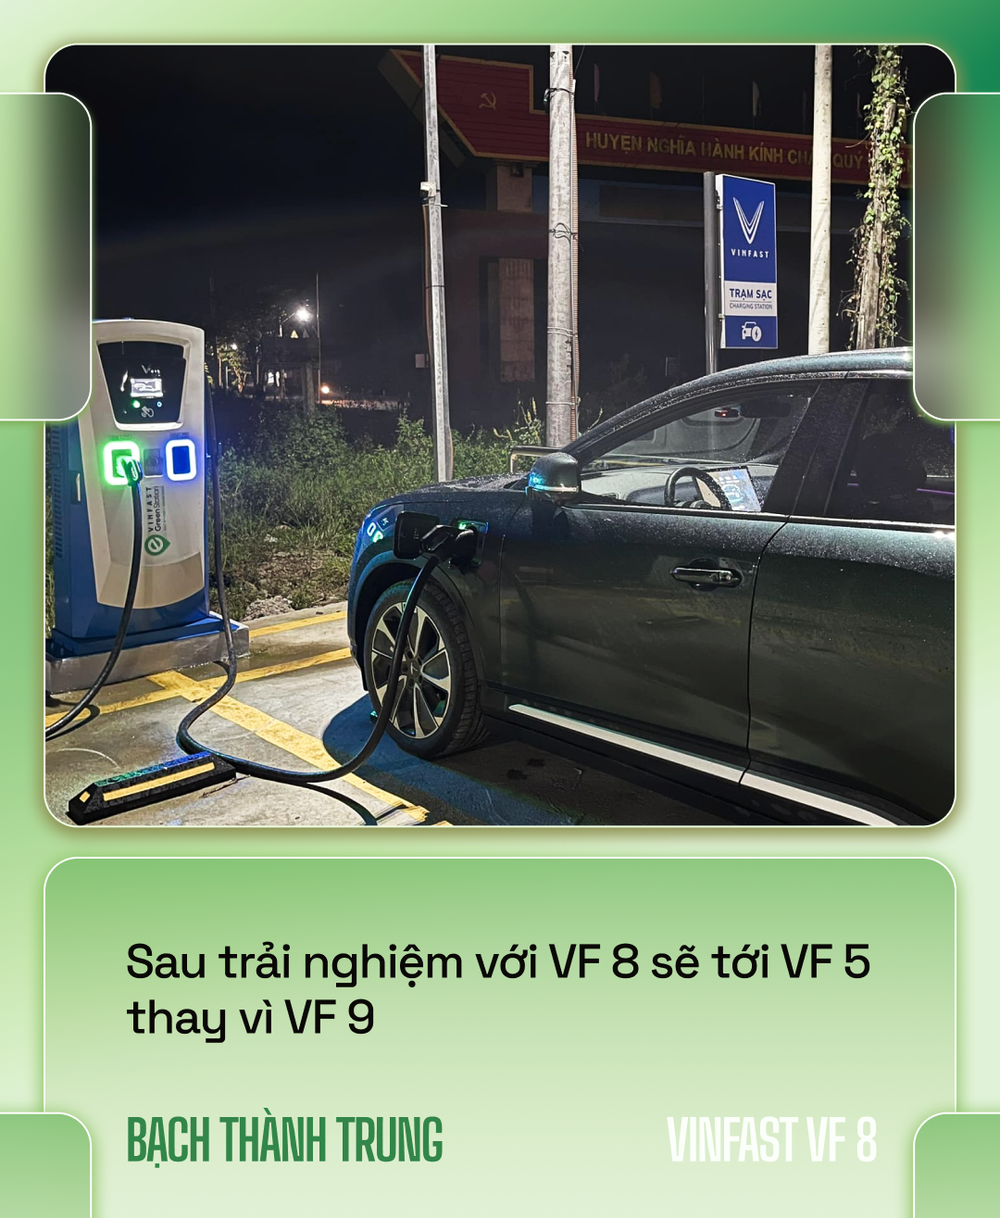 Nhà sáng lập VOZ lái VinFast VF 8 xuyên Việt hơn 6.600km: Đổ đèo nhàn hơn xe xăng, nhưng vẫn cần hoàn thiện hơn - Ảnh 7.